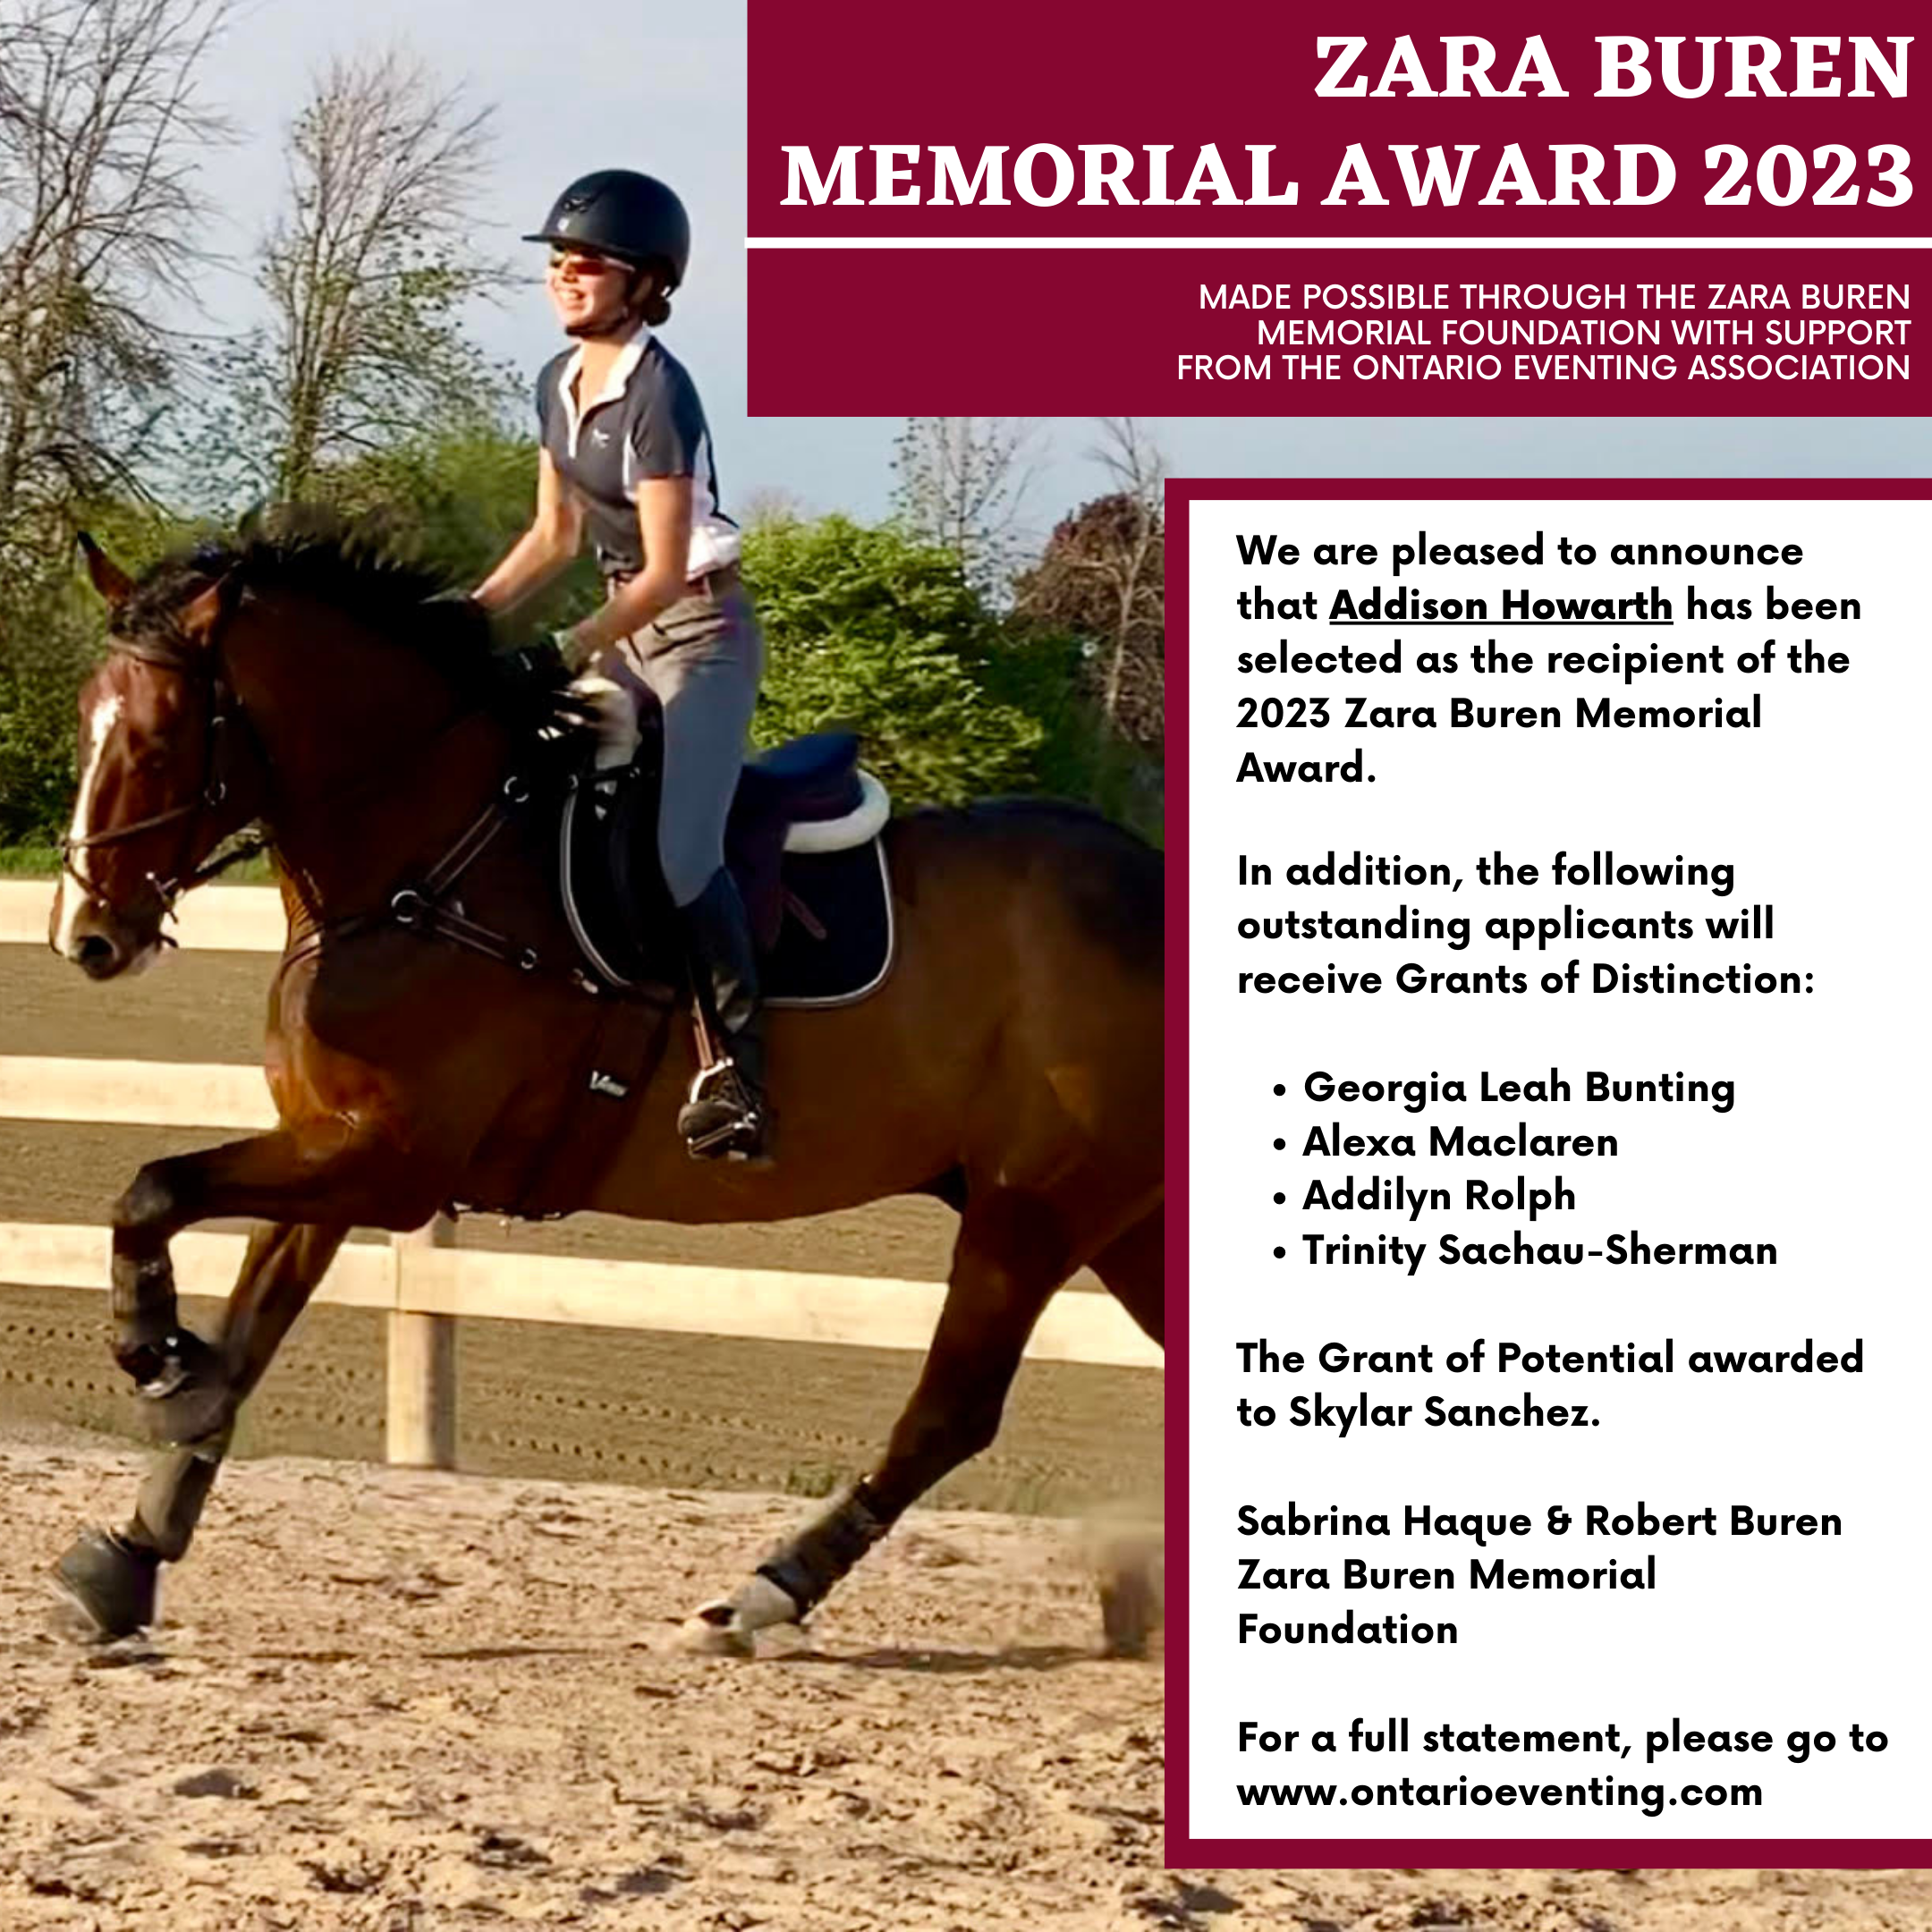 Zara Buren Memorial Award 2023 Recipient Addison Howath